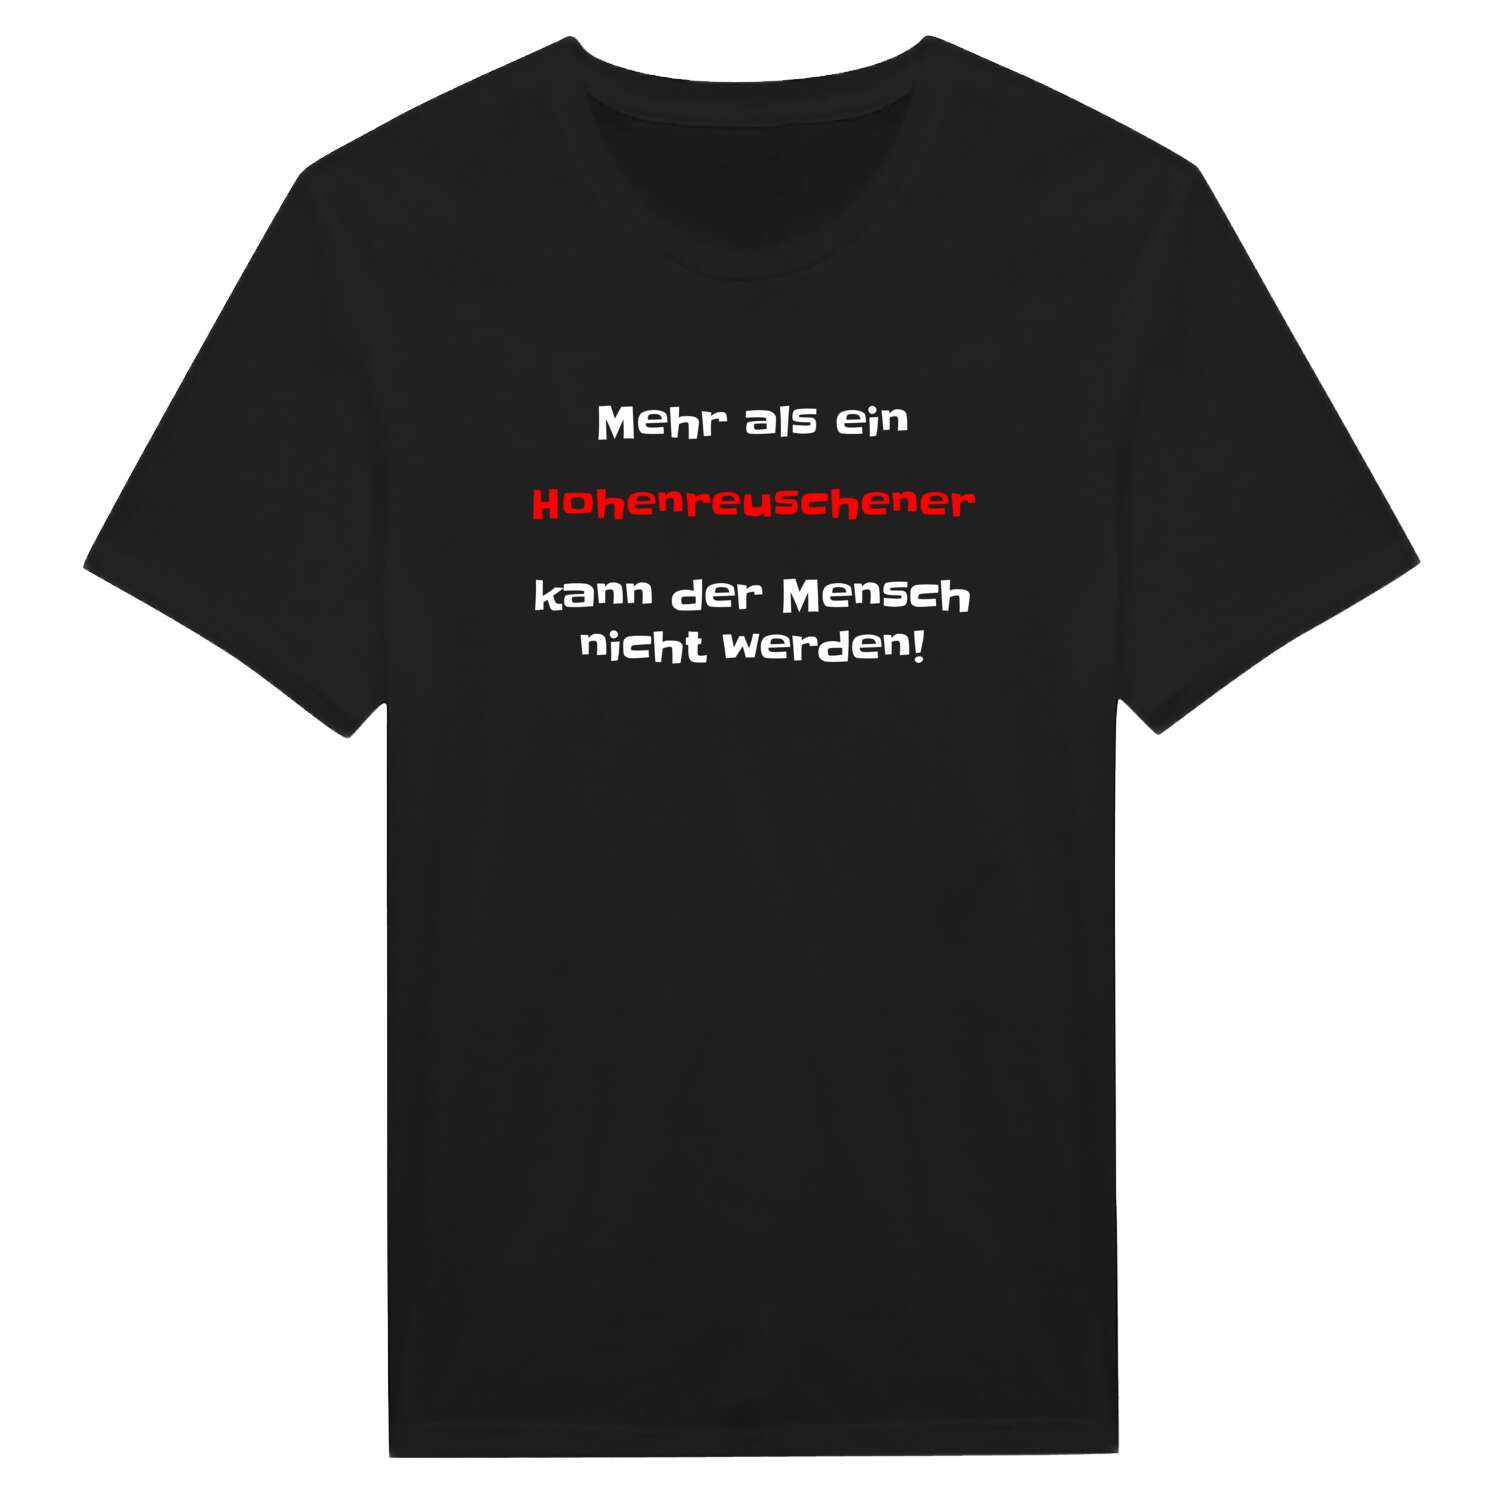 Hohenreusch T-Shirt »Mehr als ein«